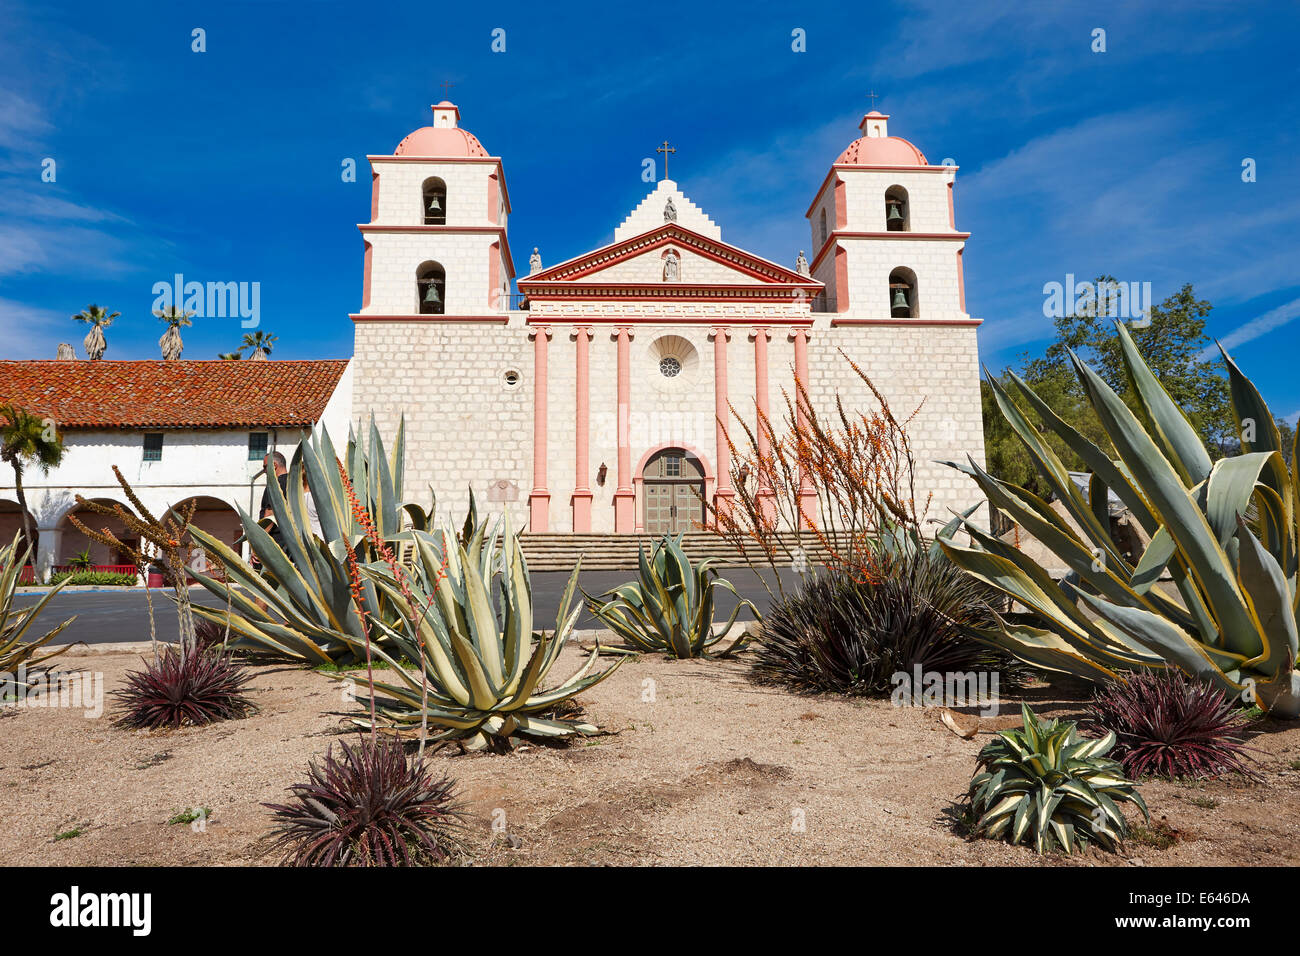 Exterior view of the Mission Santa Barbara. Santa Barbara, California, USA. Stock Photo